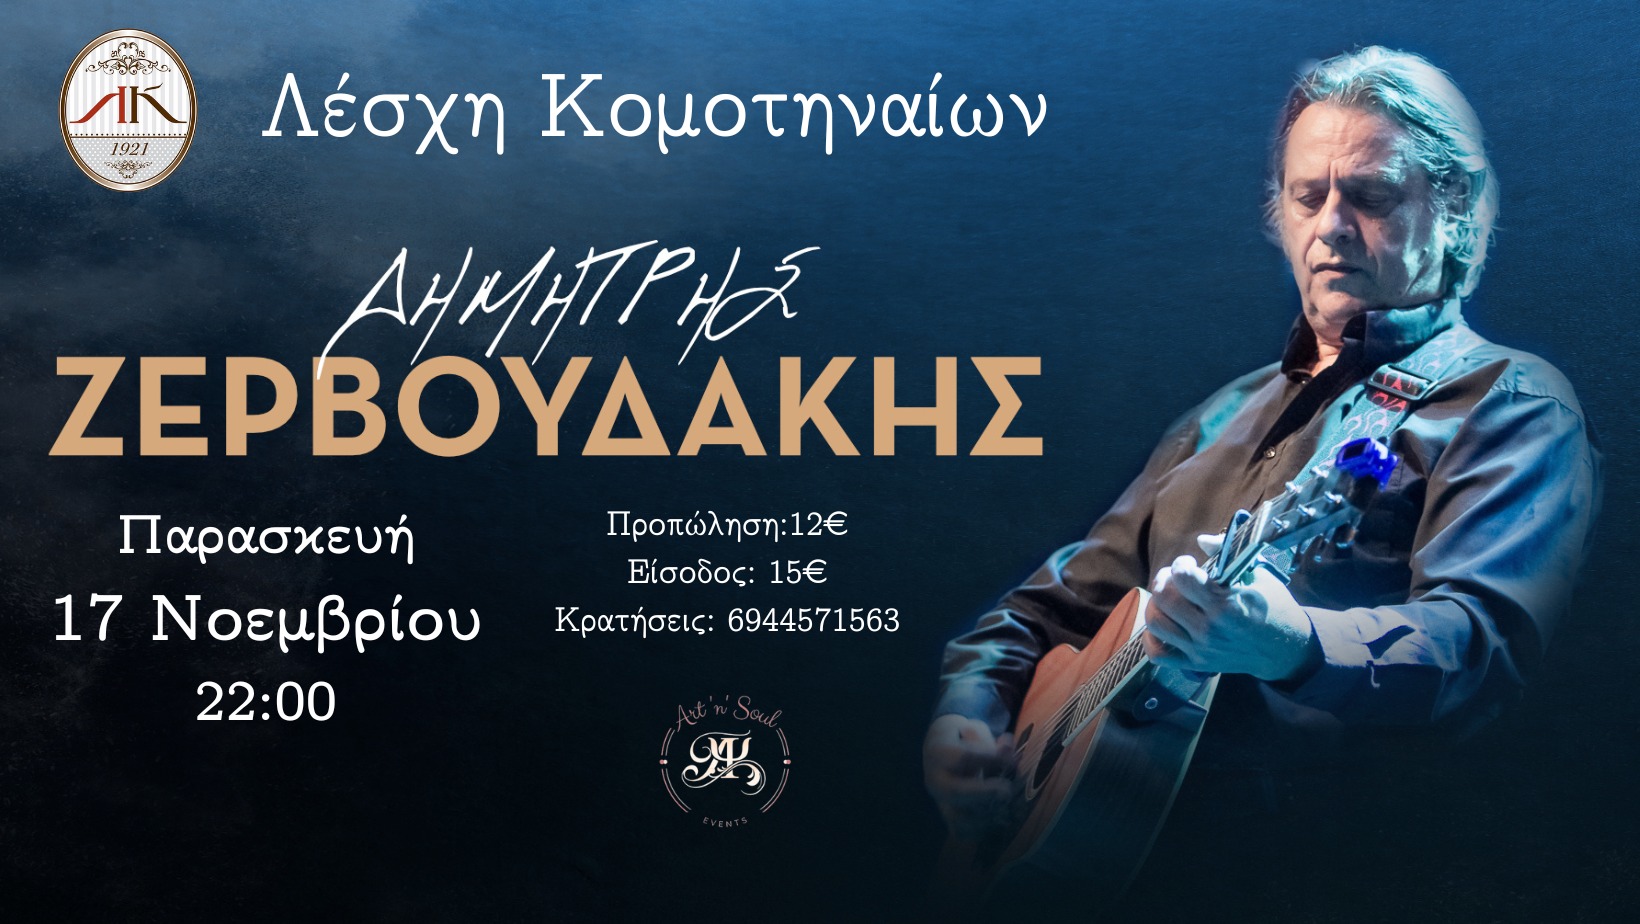 Ο Δημήτρης Ζερβουδάκης έρχεται στη Λέσχη Κομοτηναίων για μια αξέχαστη μουσική βραδιά